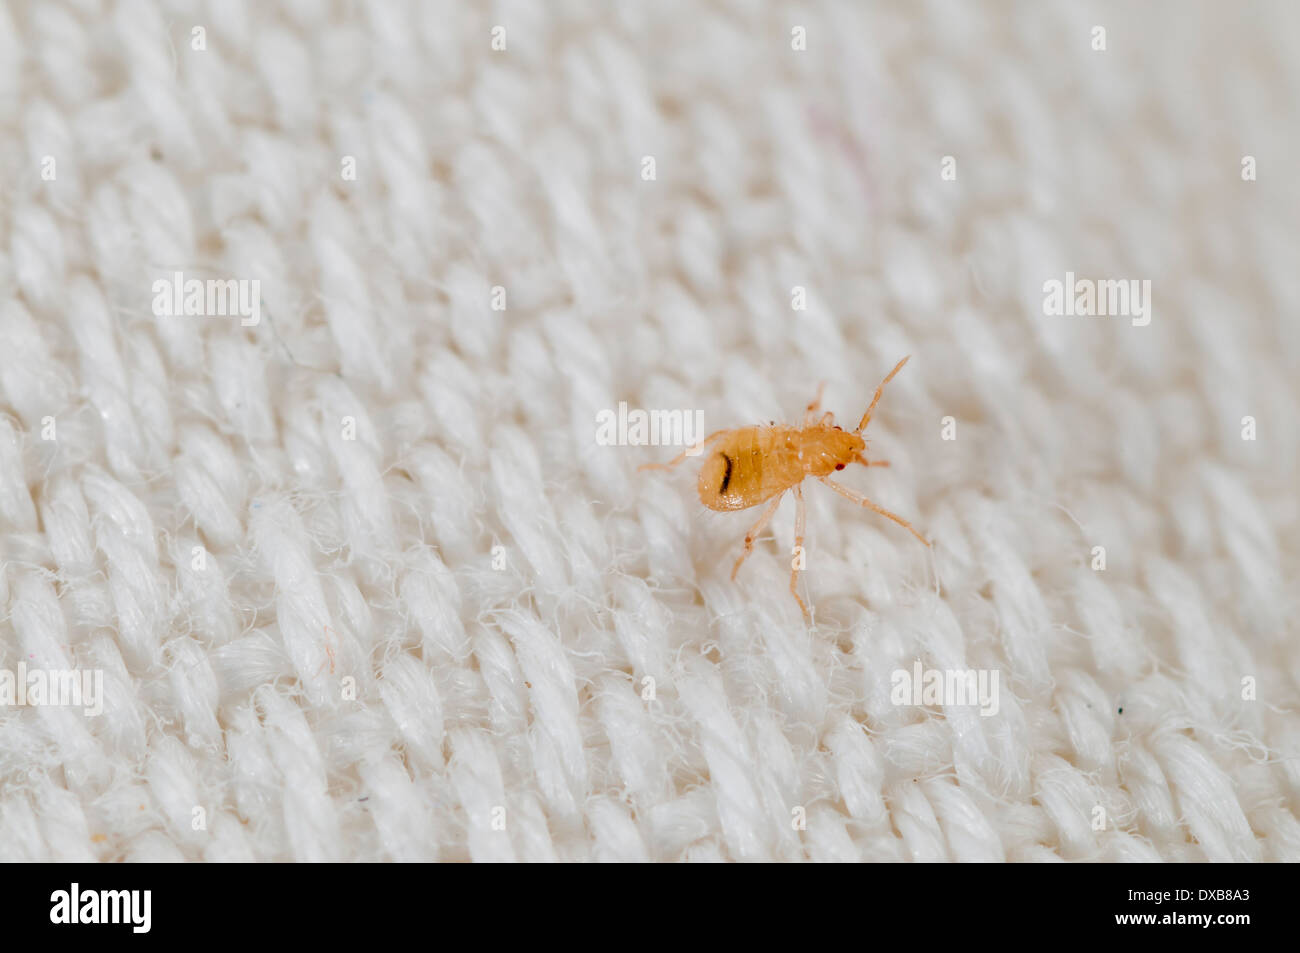 Très tôt une Bedbbug nymphe (Cimex lectularius) sur une feuille de lit brodé, Espagne Banque D'Images